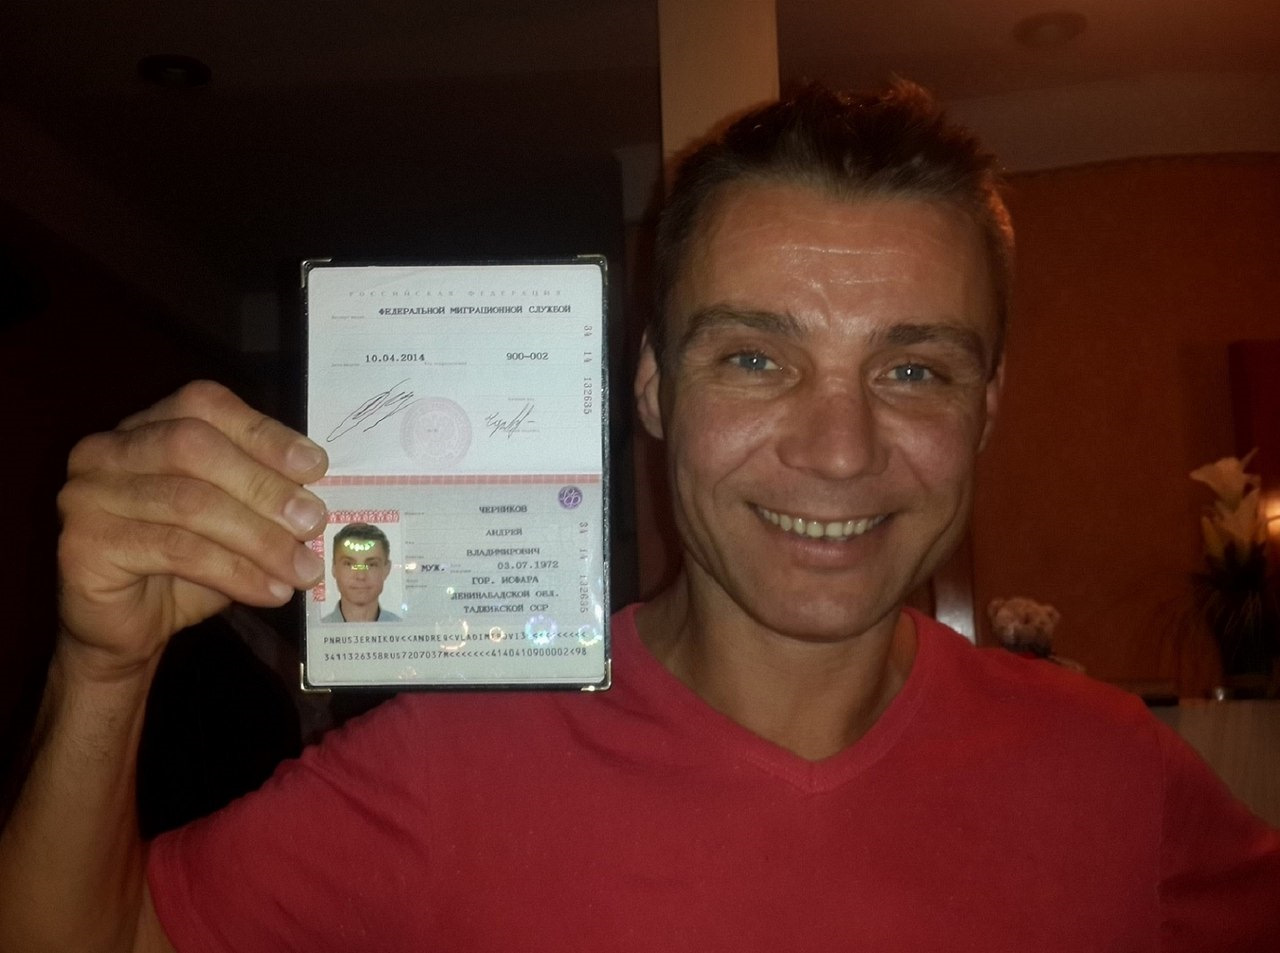 Фото с паспортом в руках и отдельно паспорт